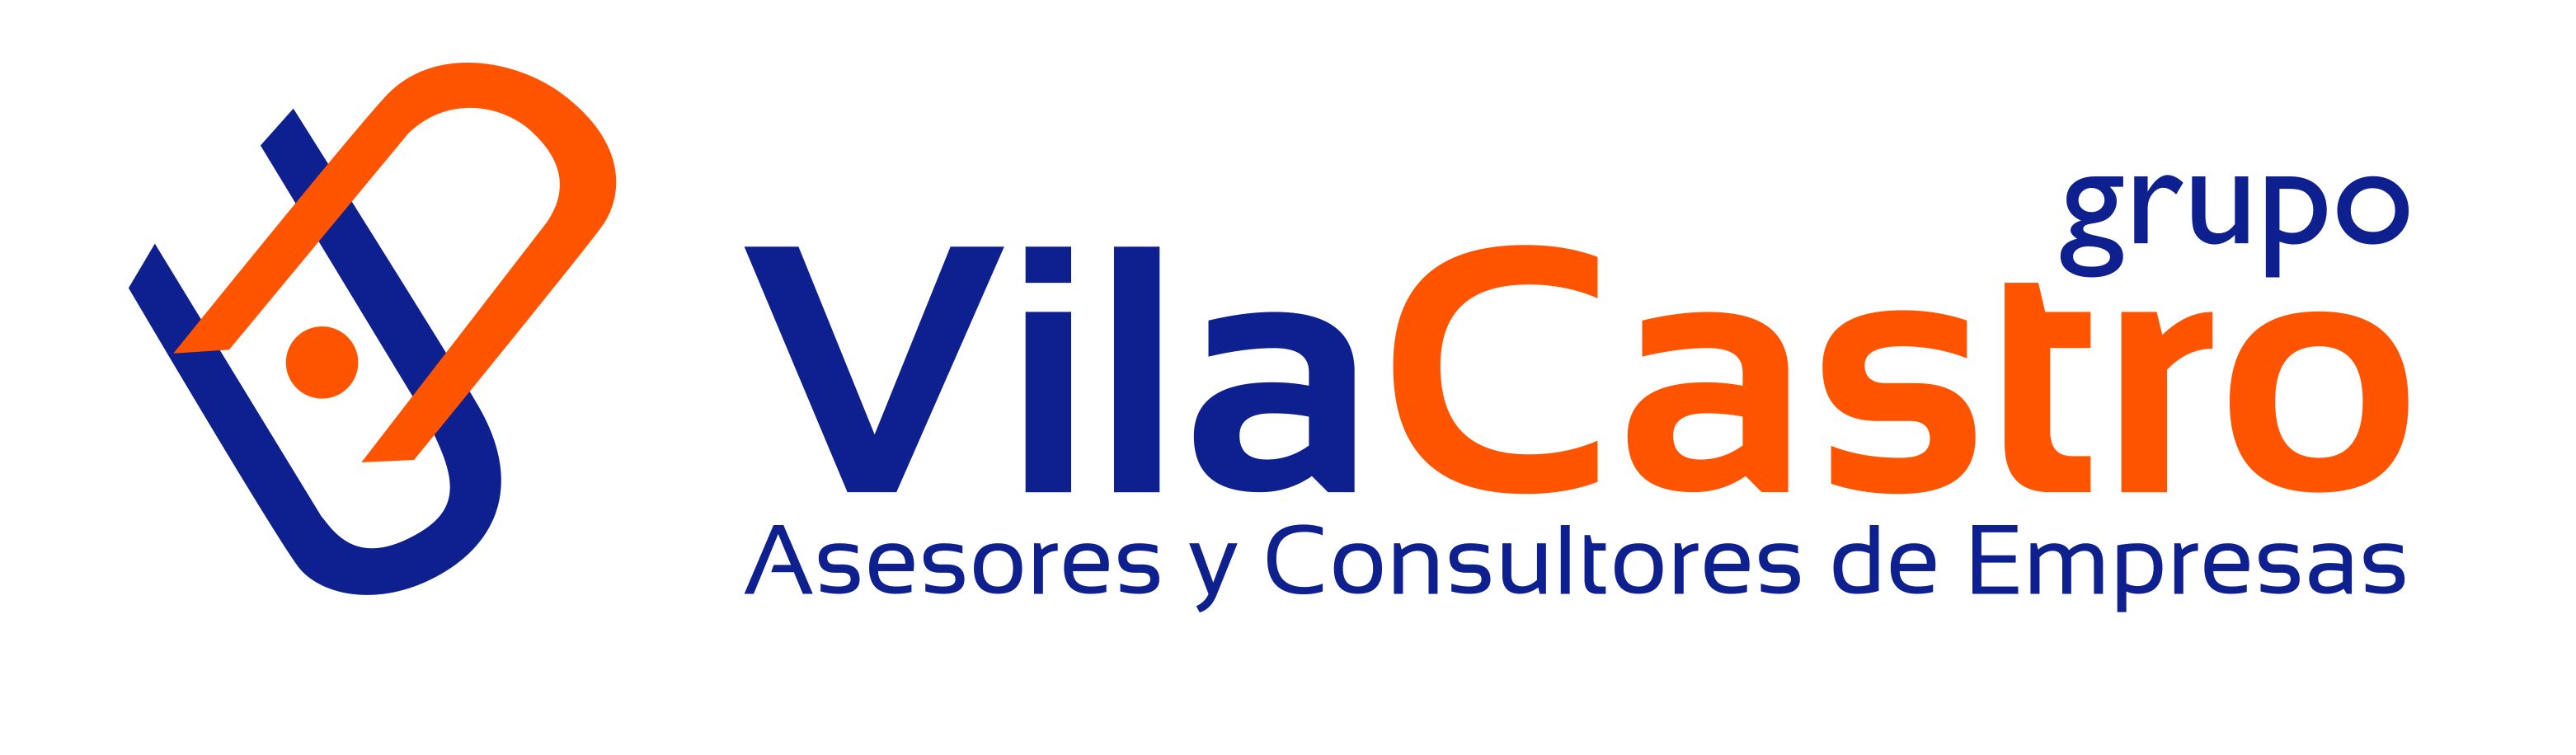 Vila Castro Grupo Asesor y Consultor